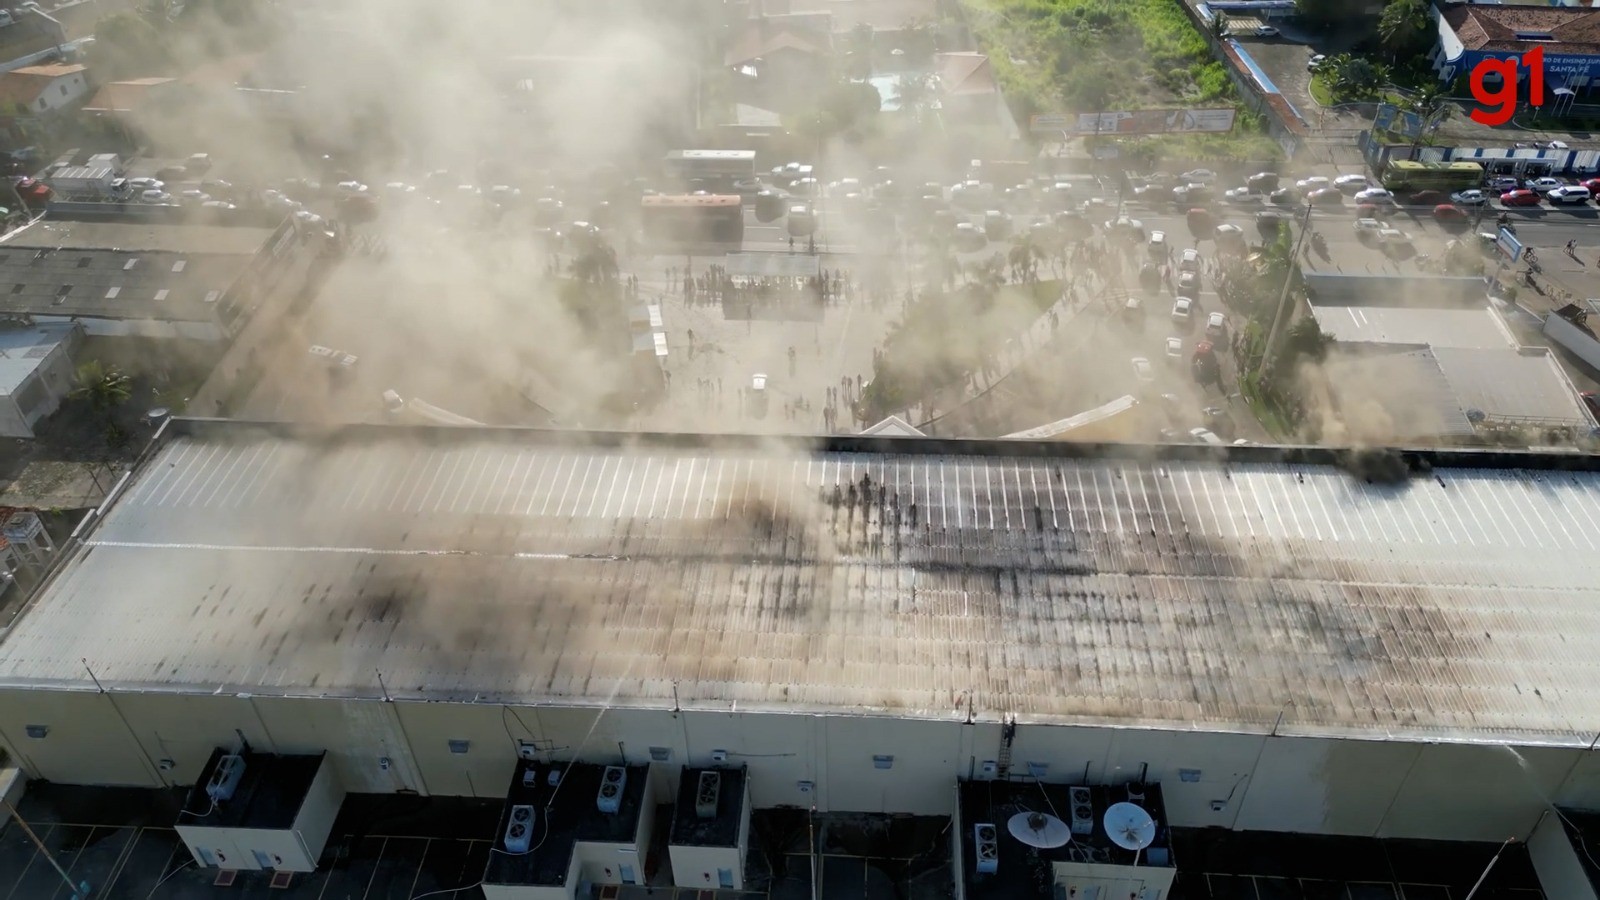 Encerra prazo para divulgação de laudo sobre causas de incêndio em cinema de São Luís; documentos não são divulgados